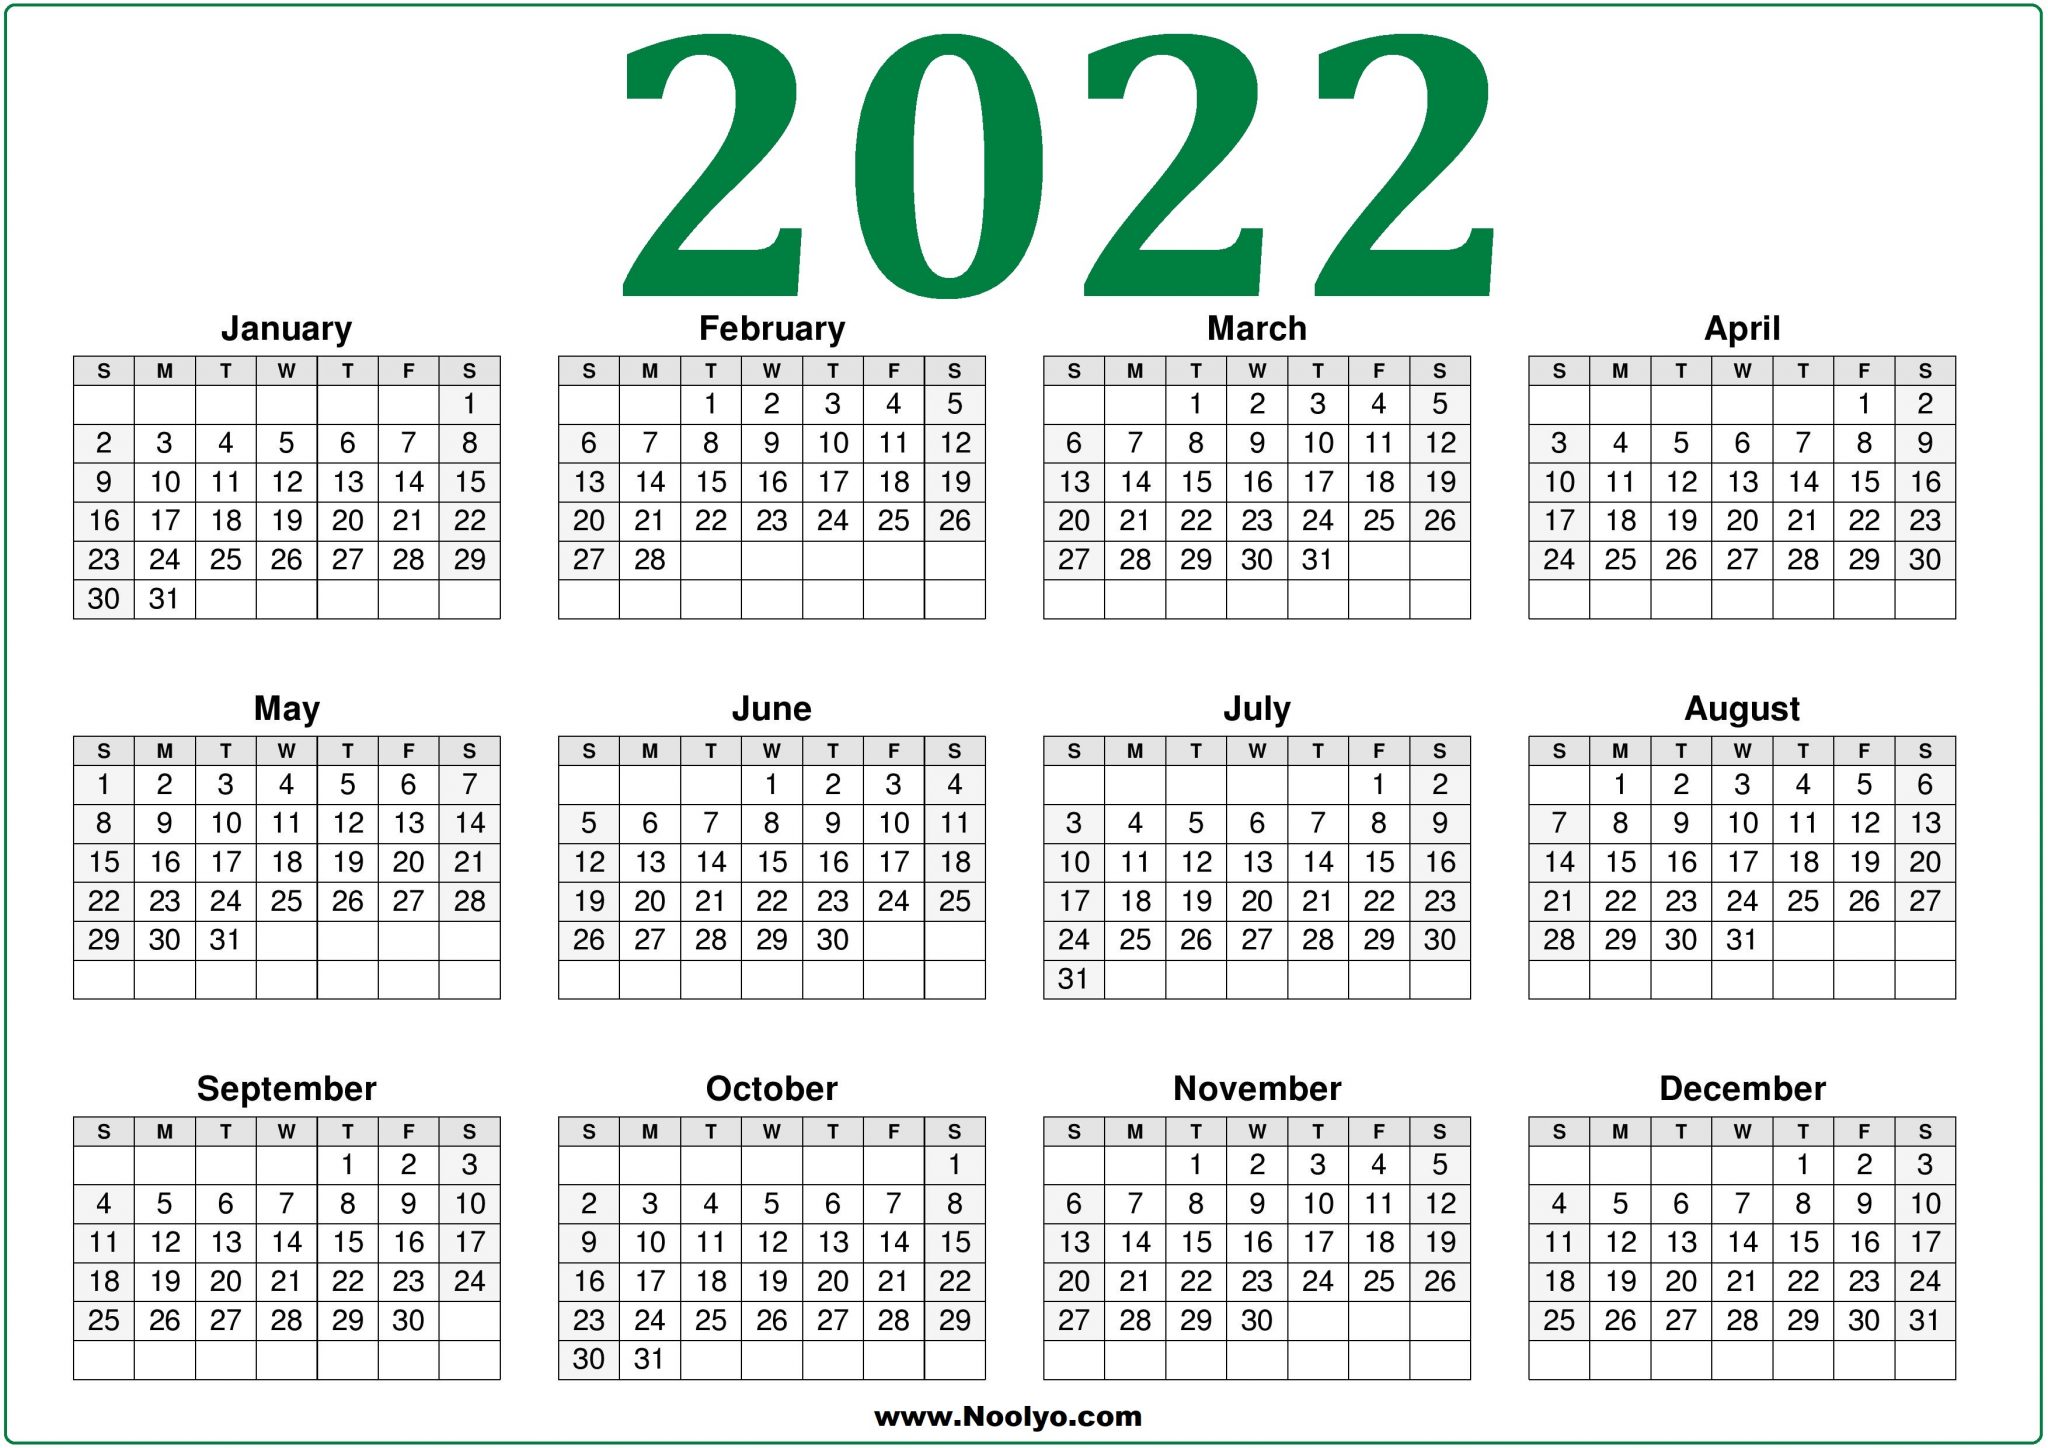 green-2022-calendar-printable-a4-size-noolyo